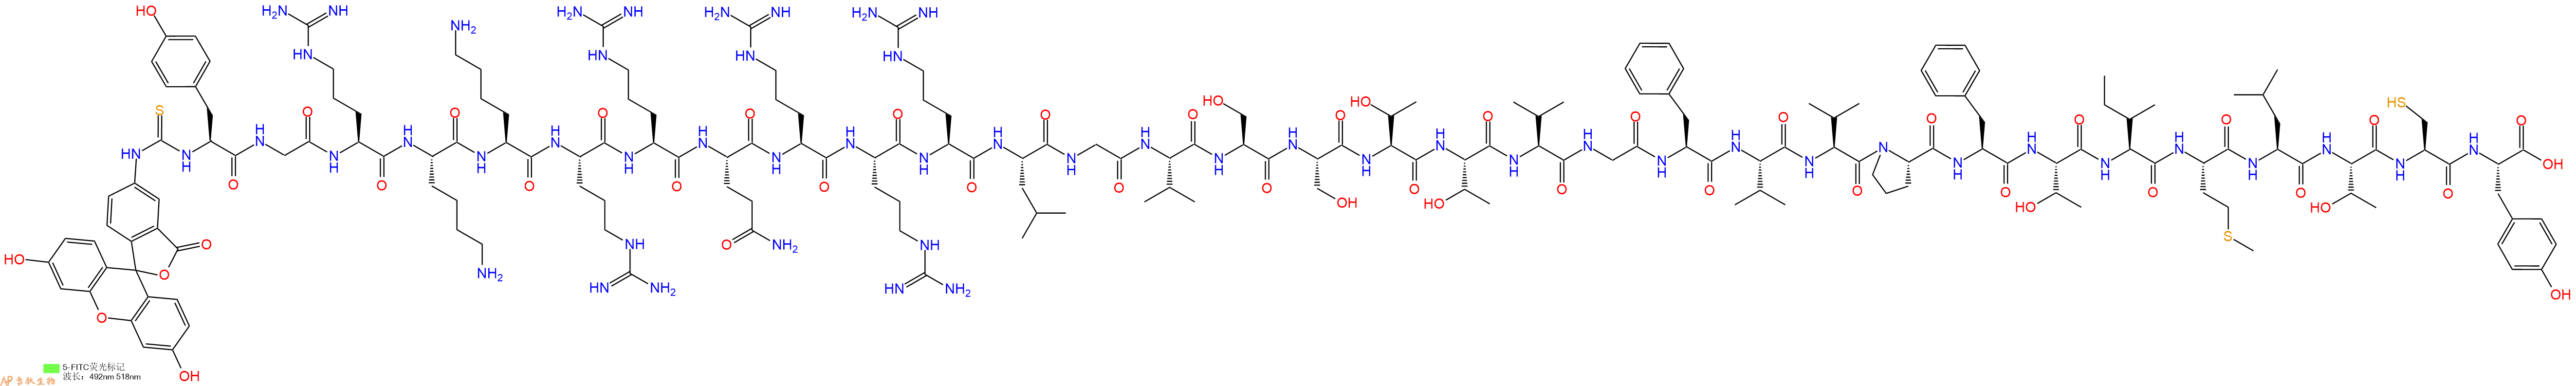 专肽生物产品FITC-Tyr-Gly-Arg-Lys-Lys-Arg-Arg-Gln-Arg-Arg-Arg-L